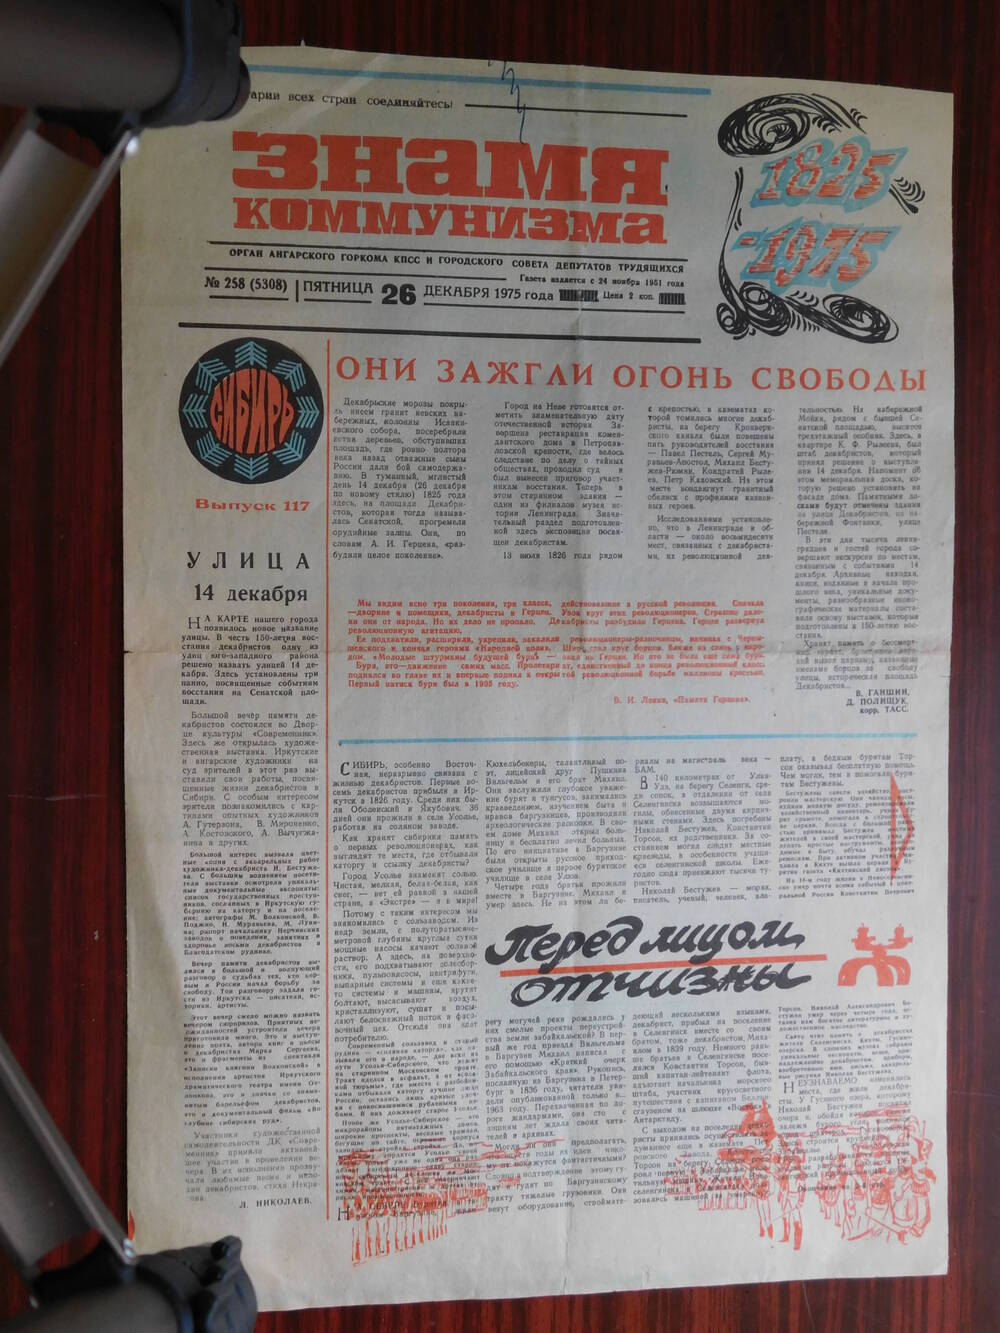 Газета Знамя коммунизма № 258 (5308) от 26.12.1975 г. В. Ганшин, Д. Полищук. Они зажгли огонь свободы. Ангарск.